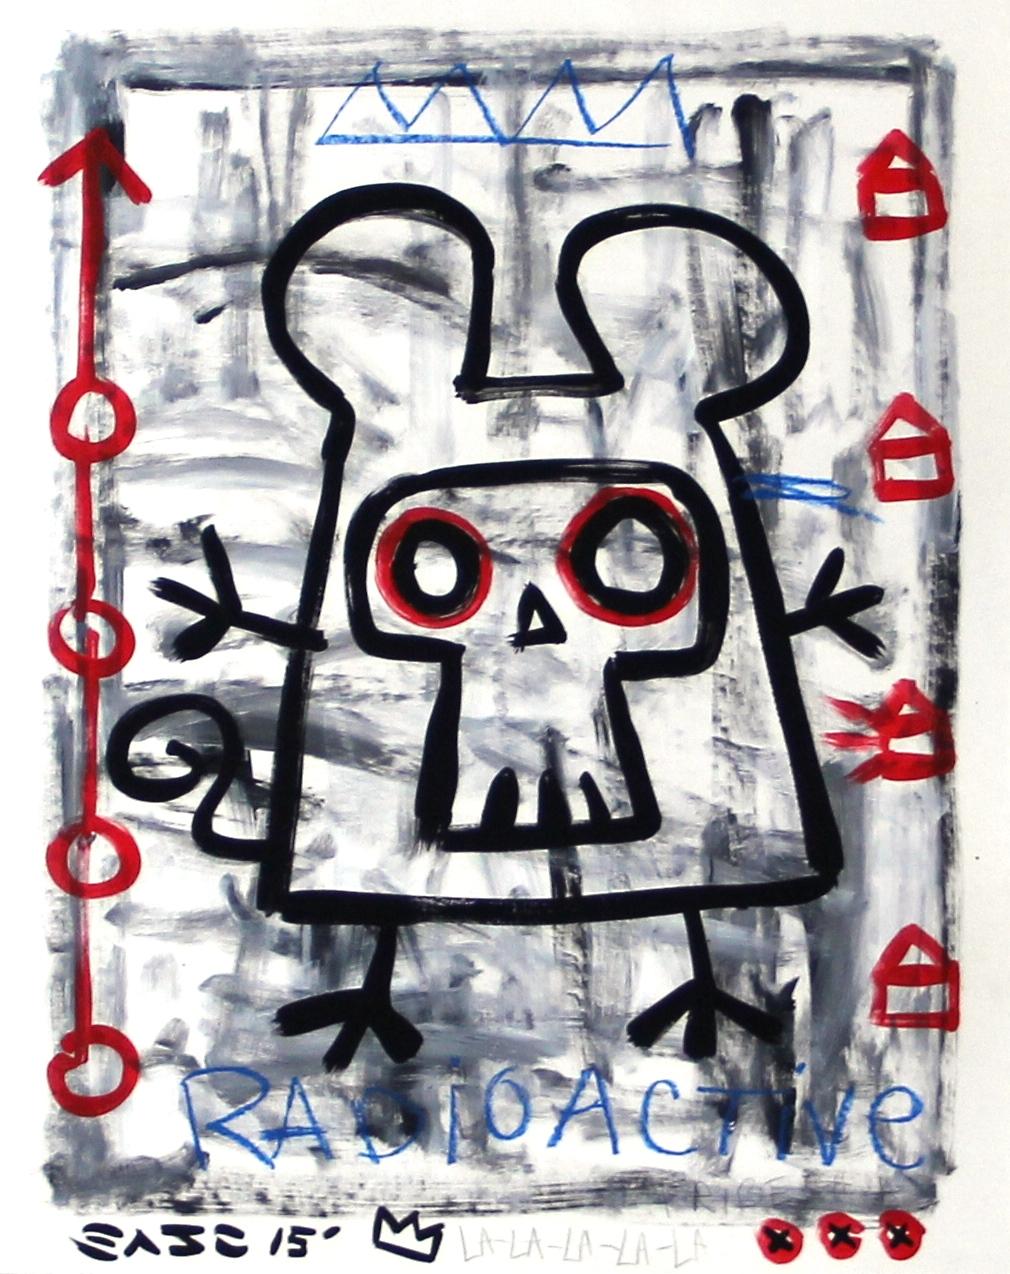 "Radio Active" Original Street Art inspired by Robot and Figures Pop Art